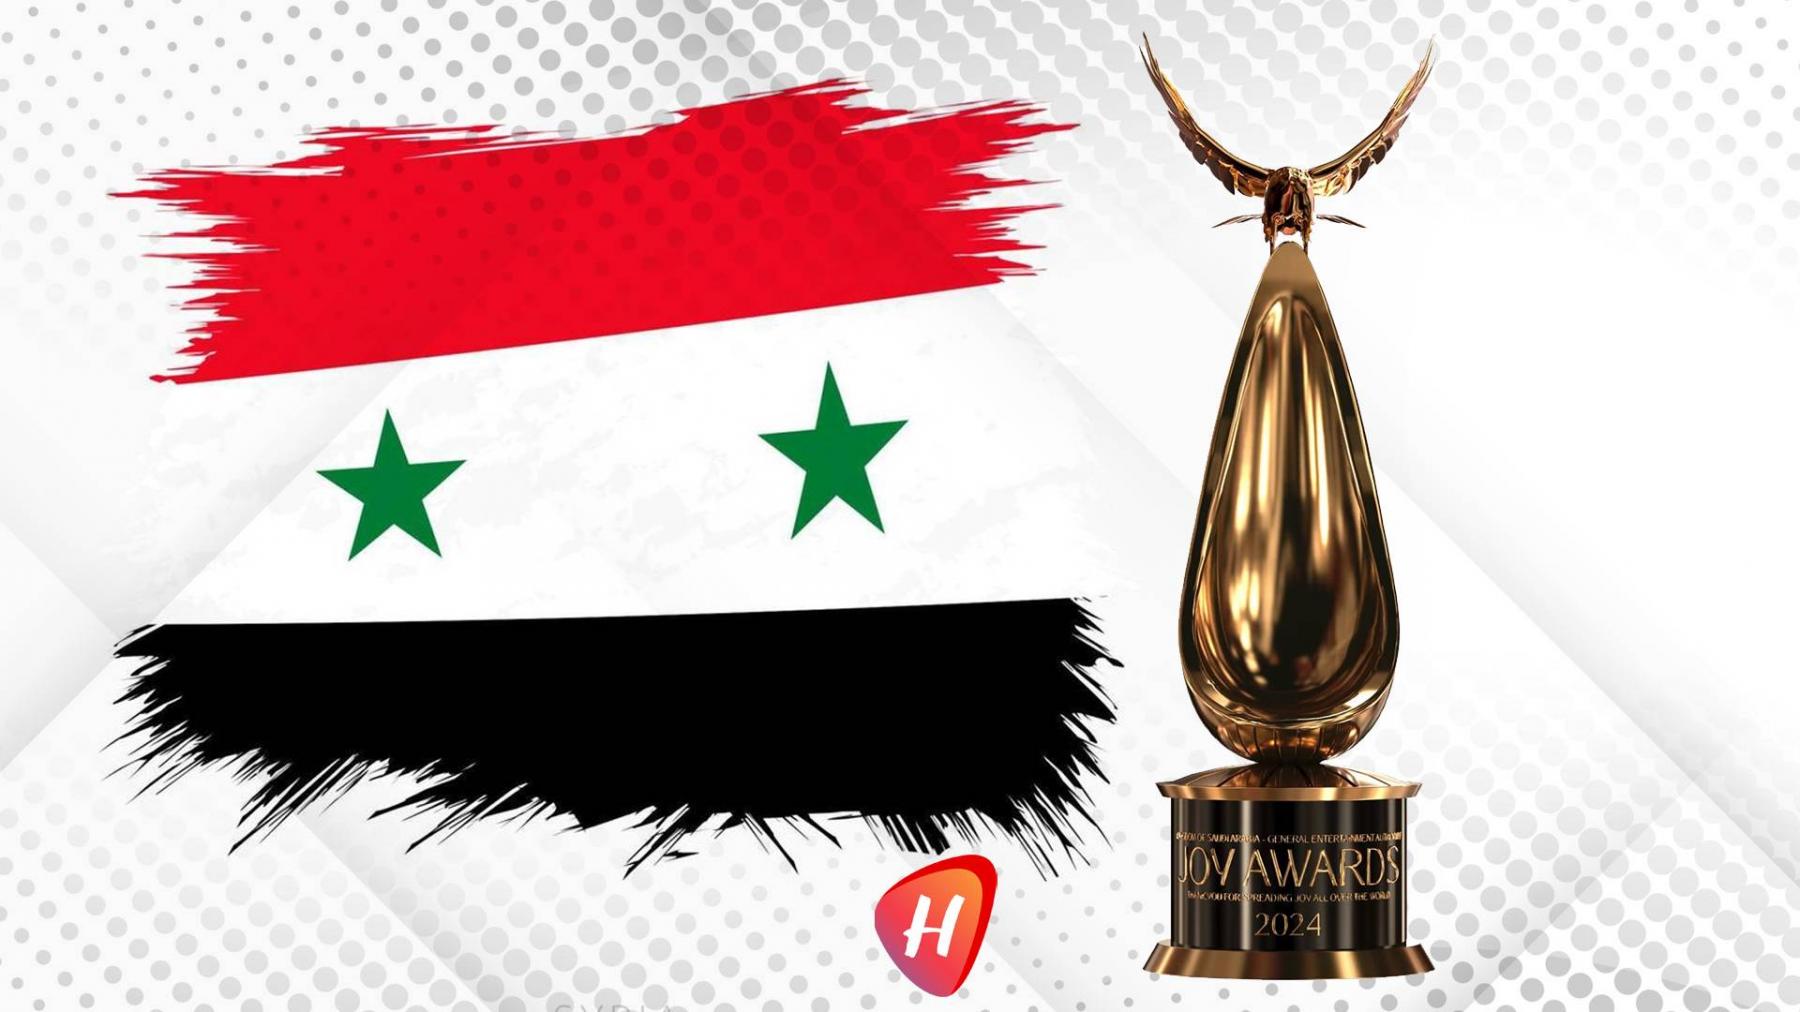 من هم نجوم سوريا المرشحون لجوائز Joy Awards؟